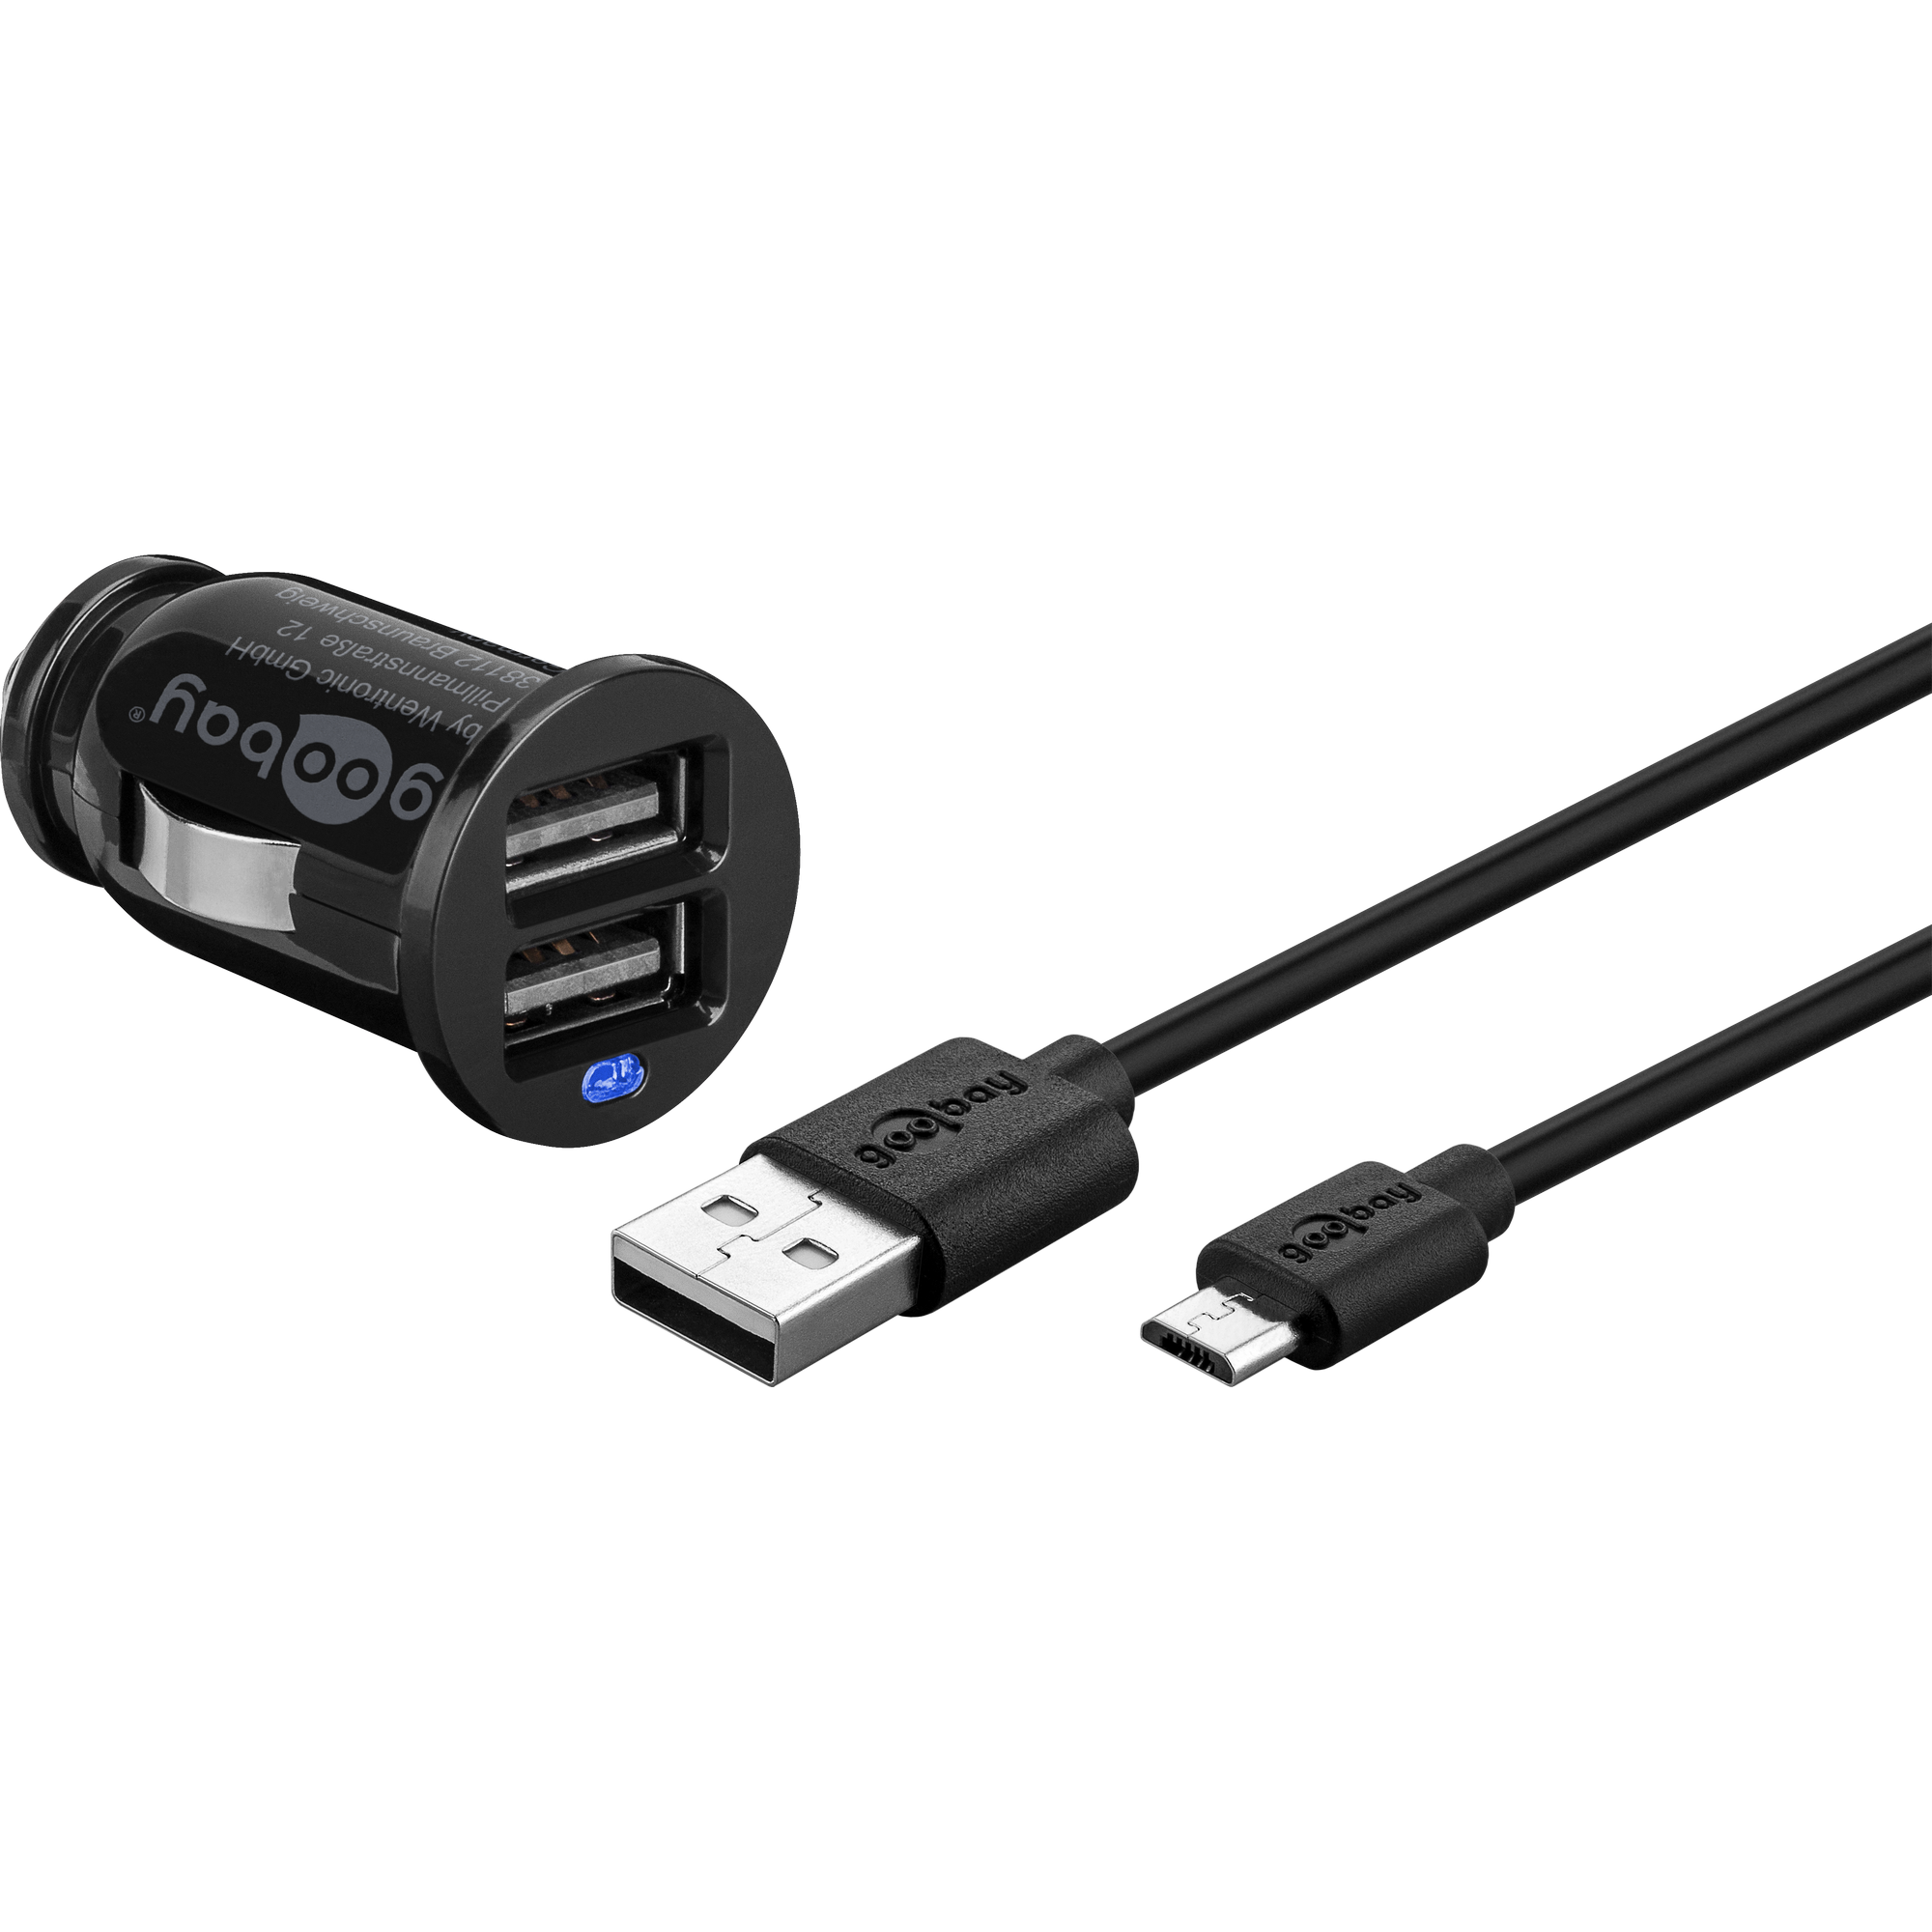 4-in-1 USB-Autoladegerät: 4-Port-Schnellladeadapter für Ihr